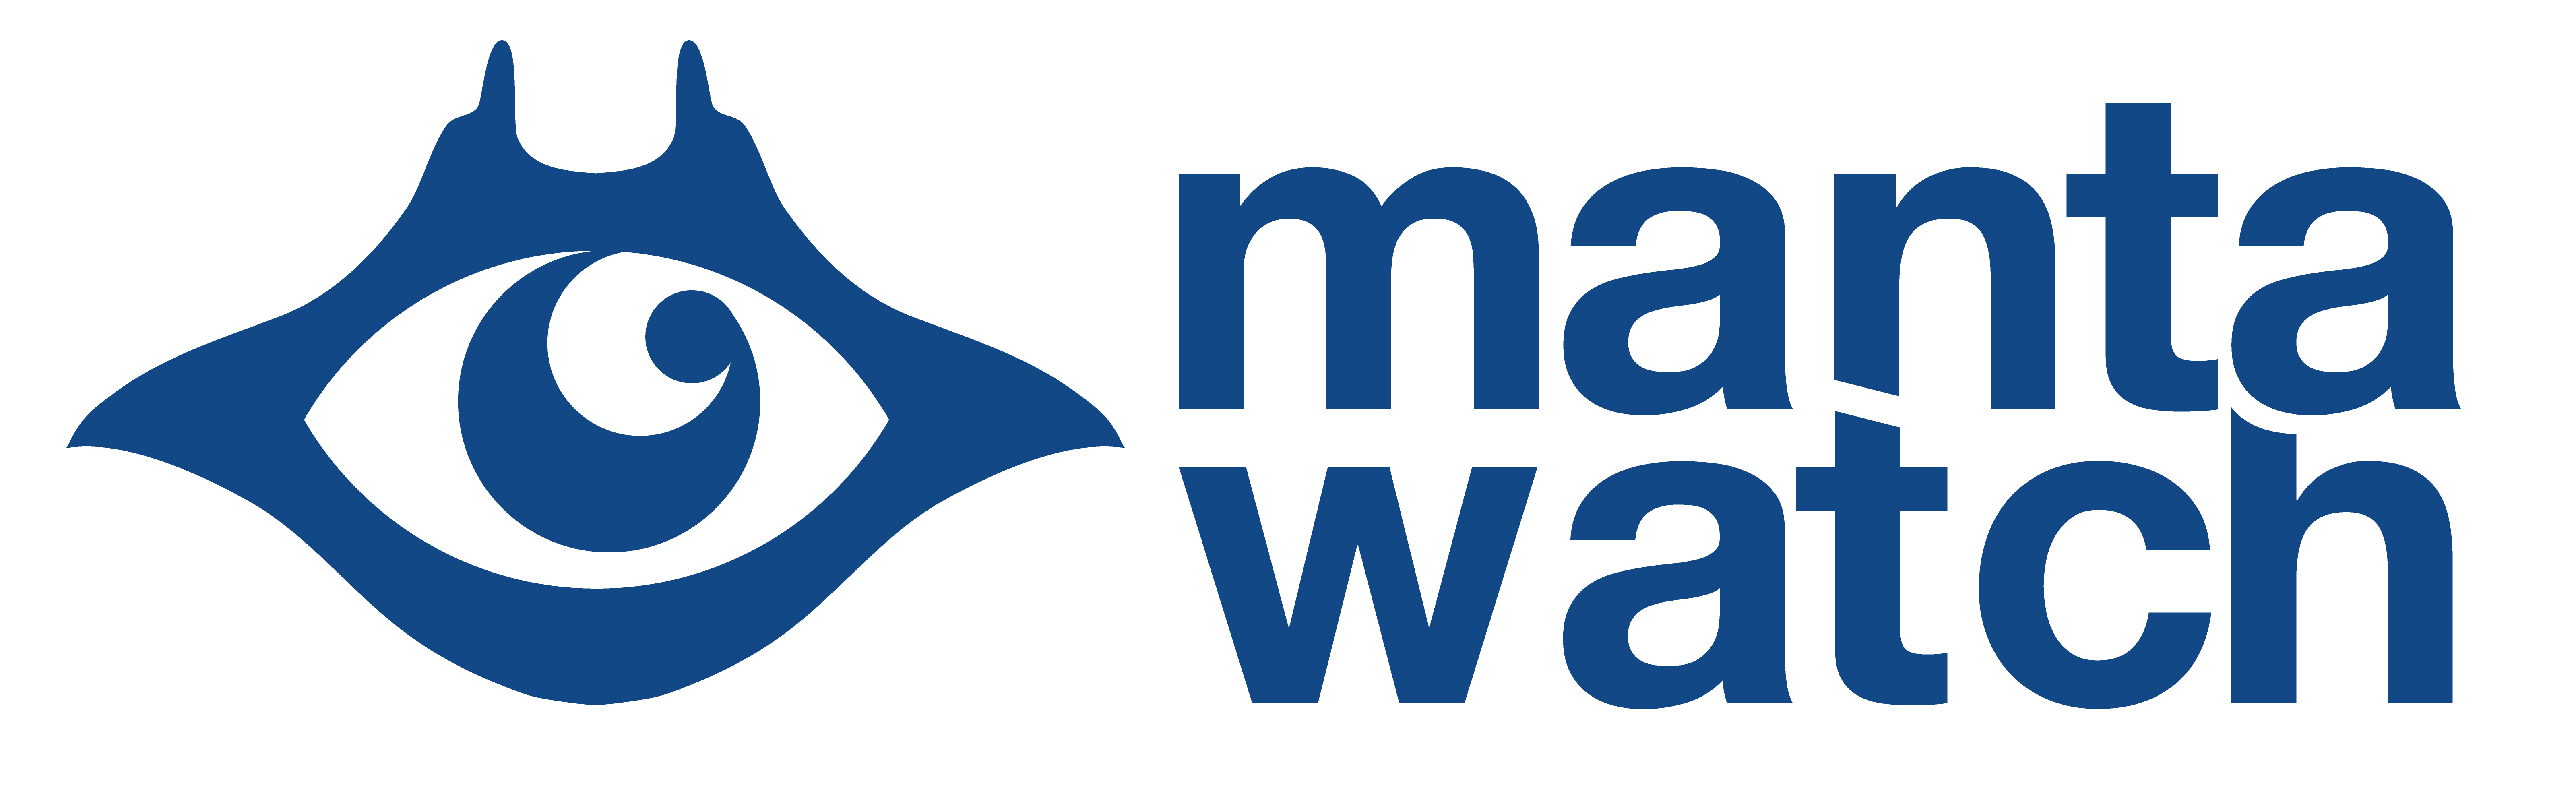 Manta Logo - Manta Ray Conservation - MantaWatch